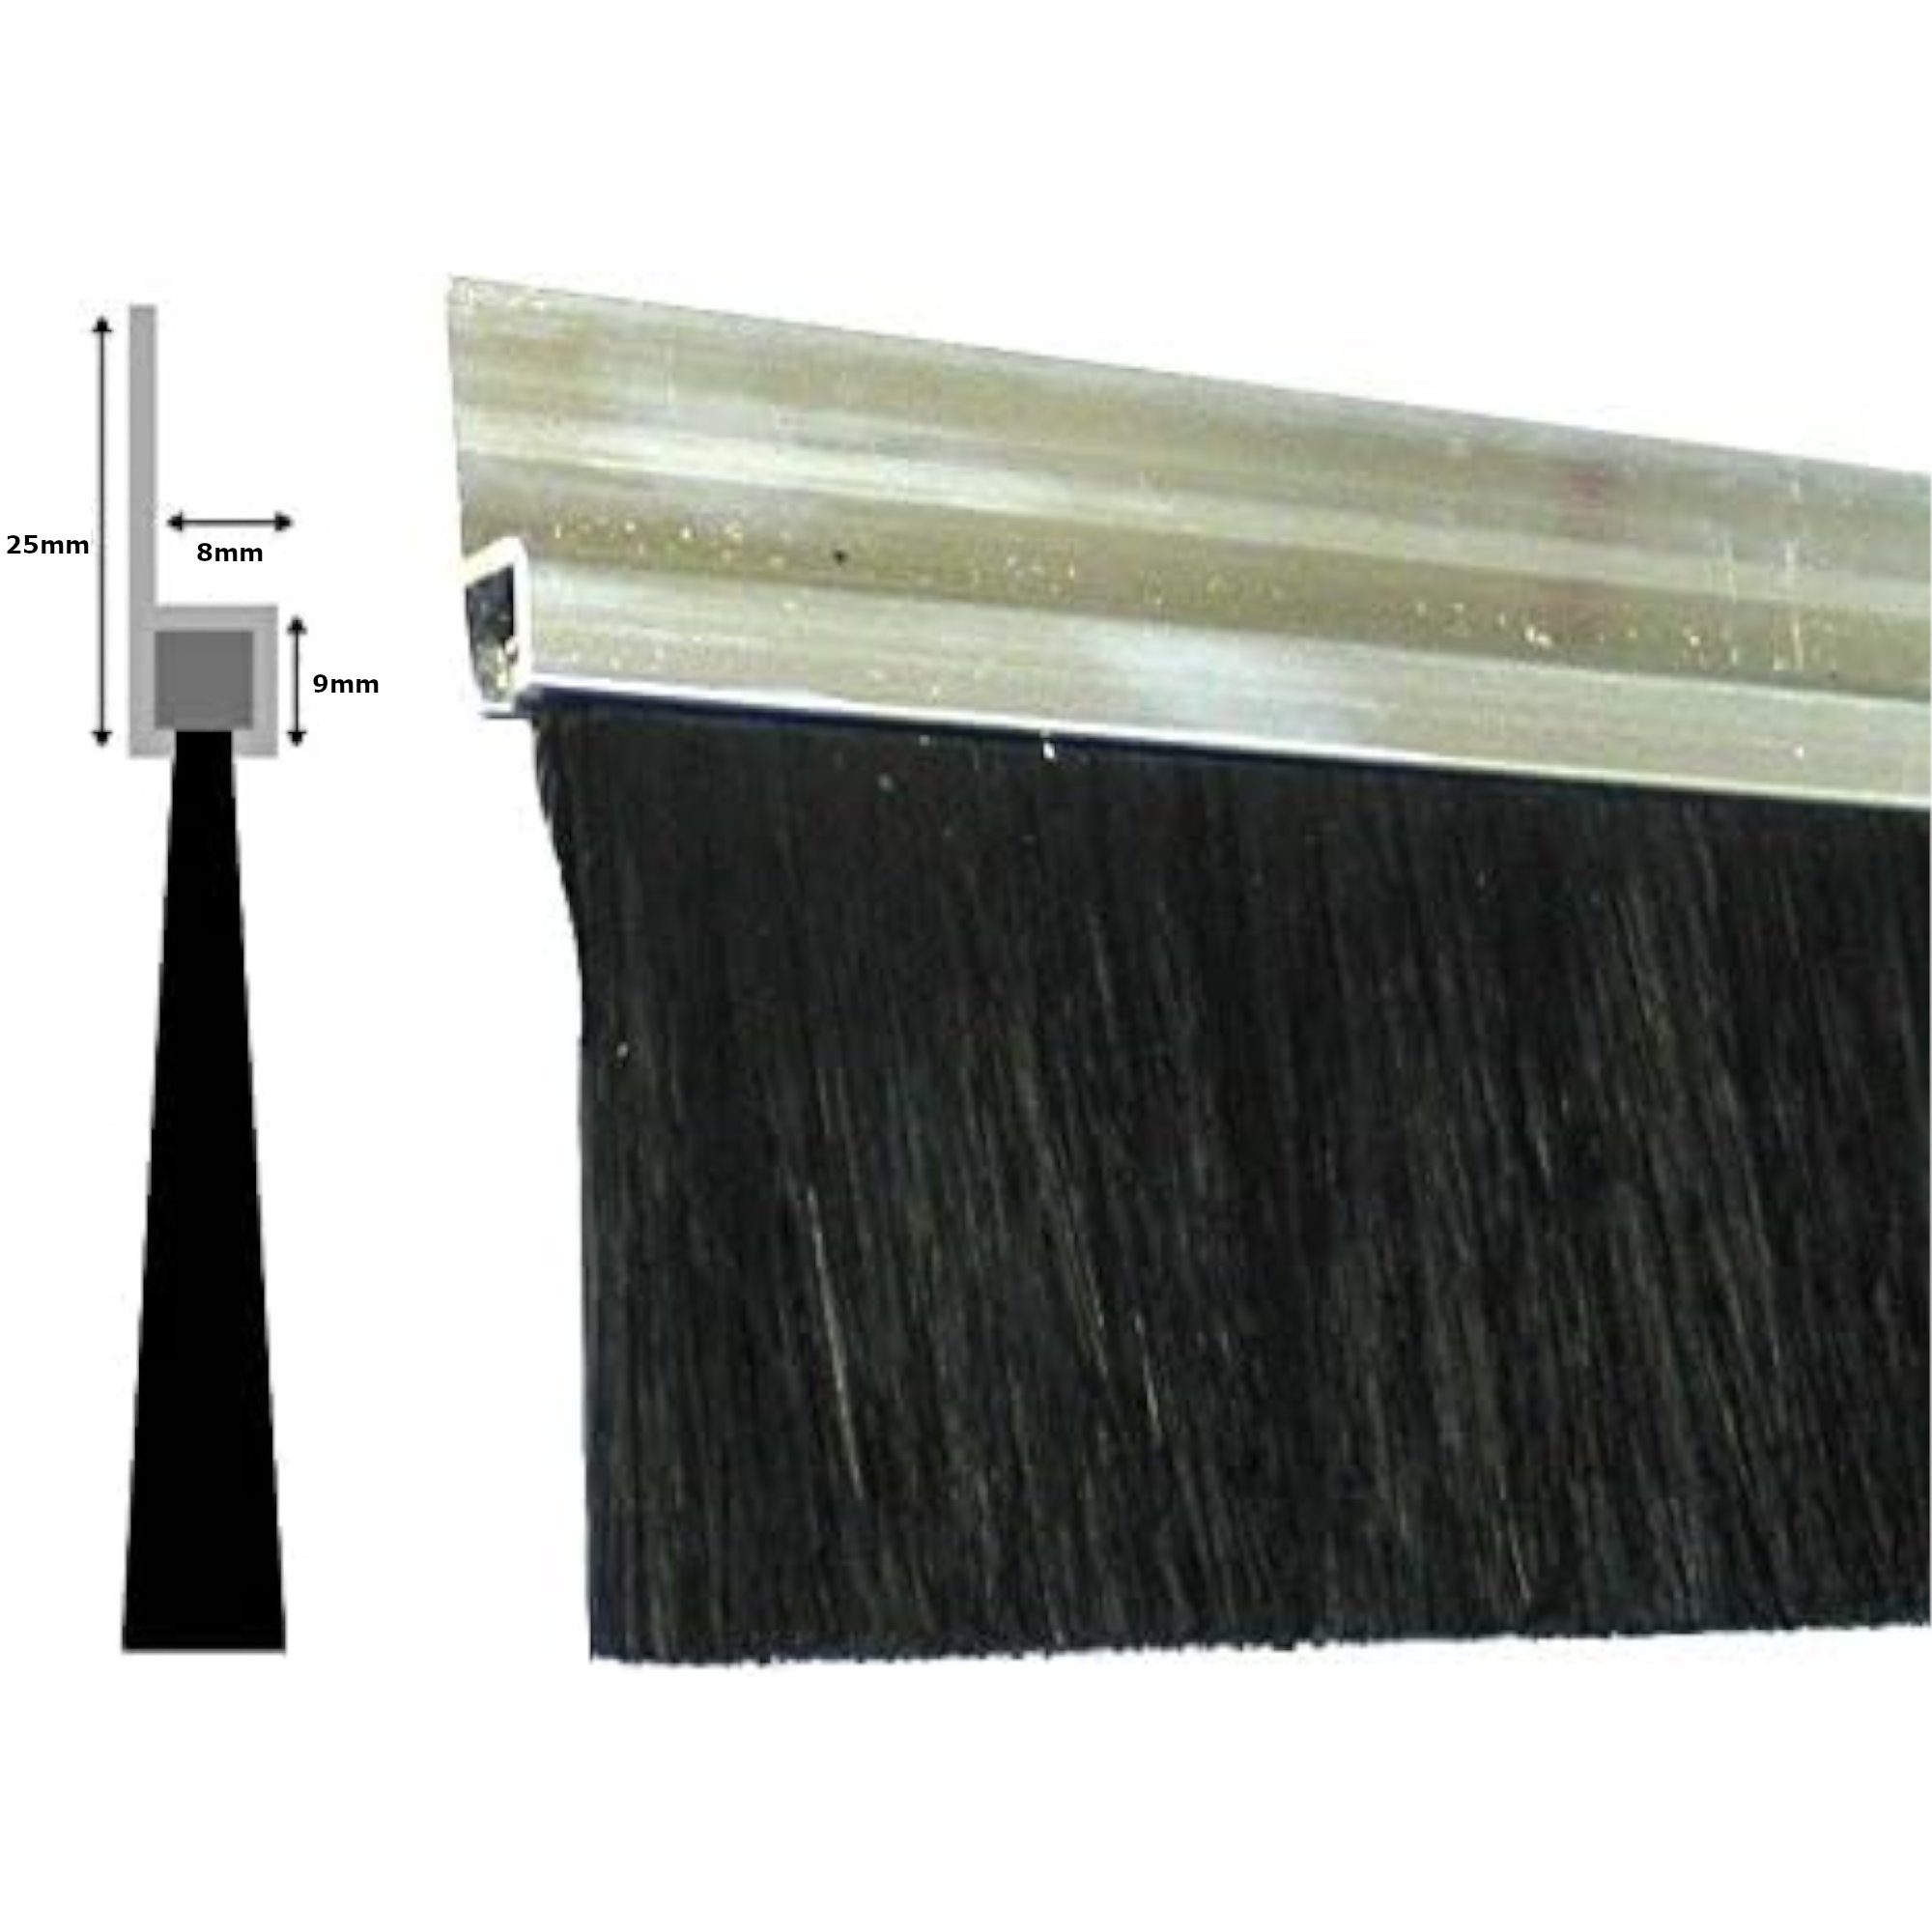 1m Streifenbürste 50mm Bürstendichtung Alu Profil Türbürste Torbürste Türbesen